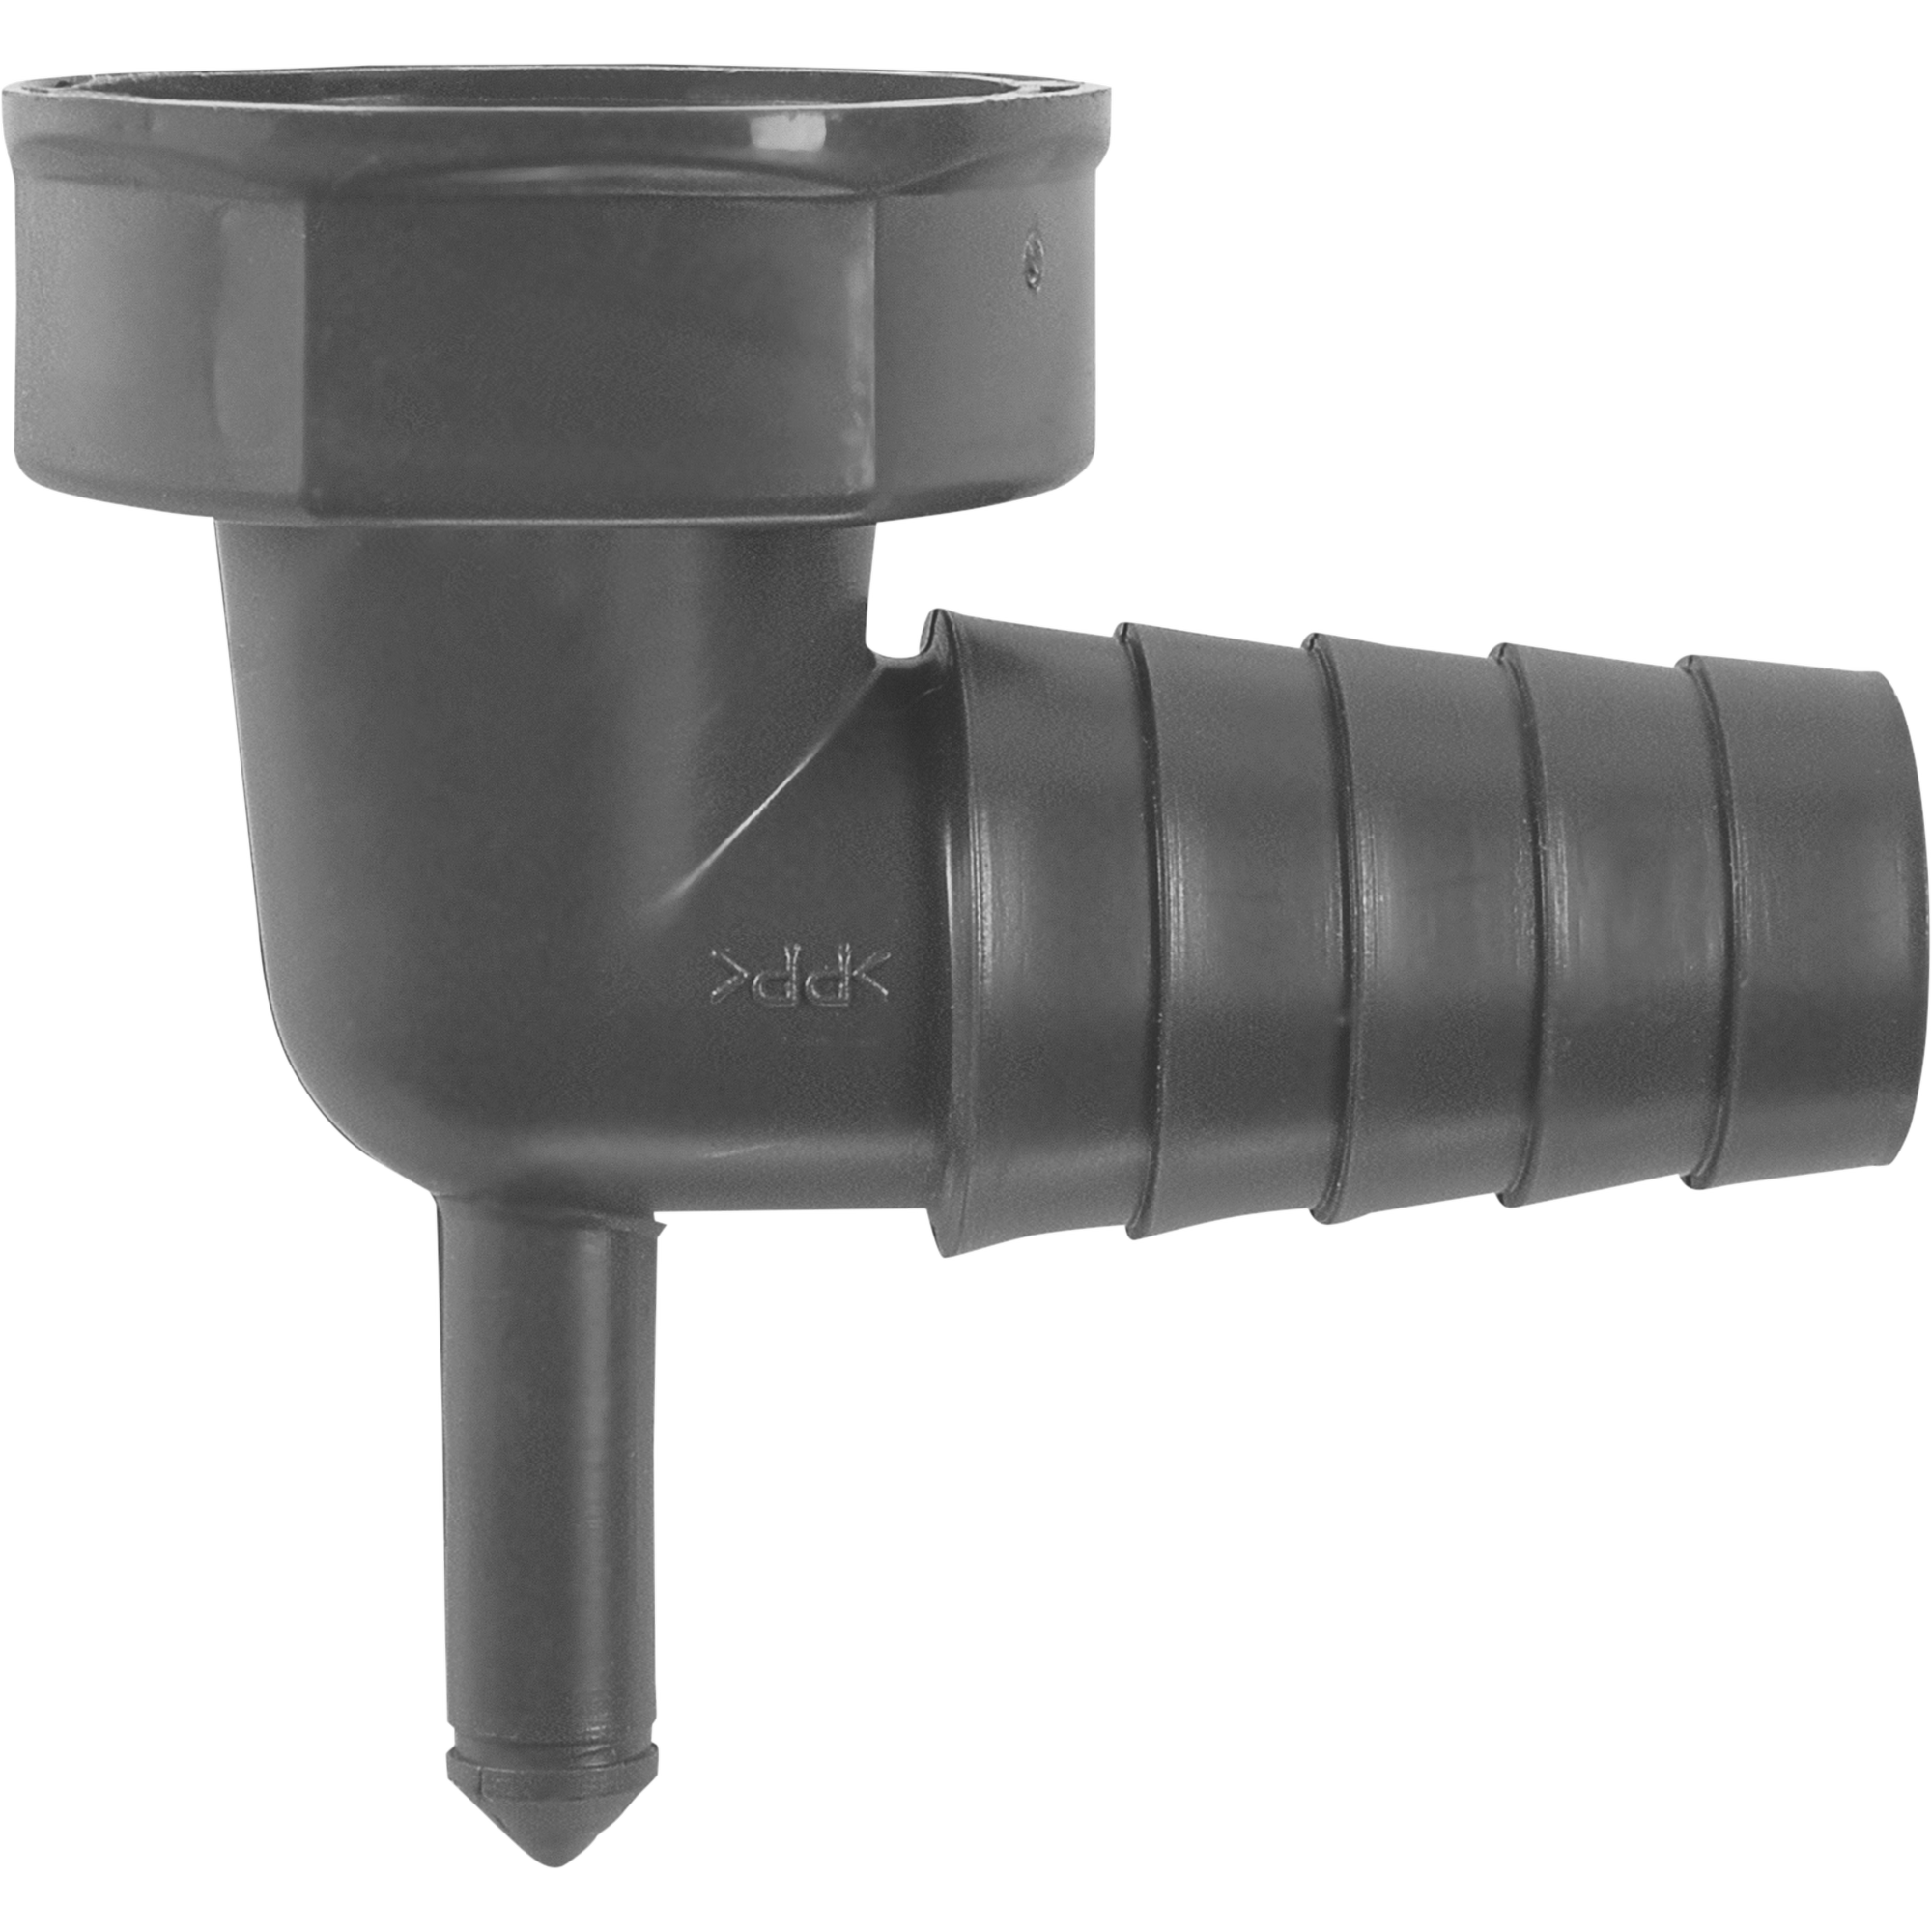 Winkel-Schlauchanschluss mit Kondensatanschluss, 90°, Ø 21-23 mm, 1" + product picture